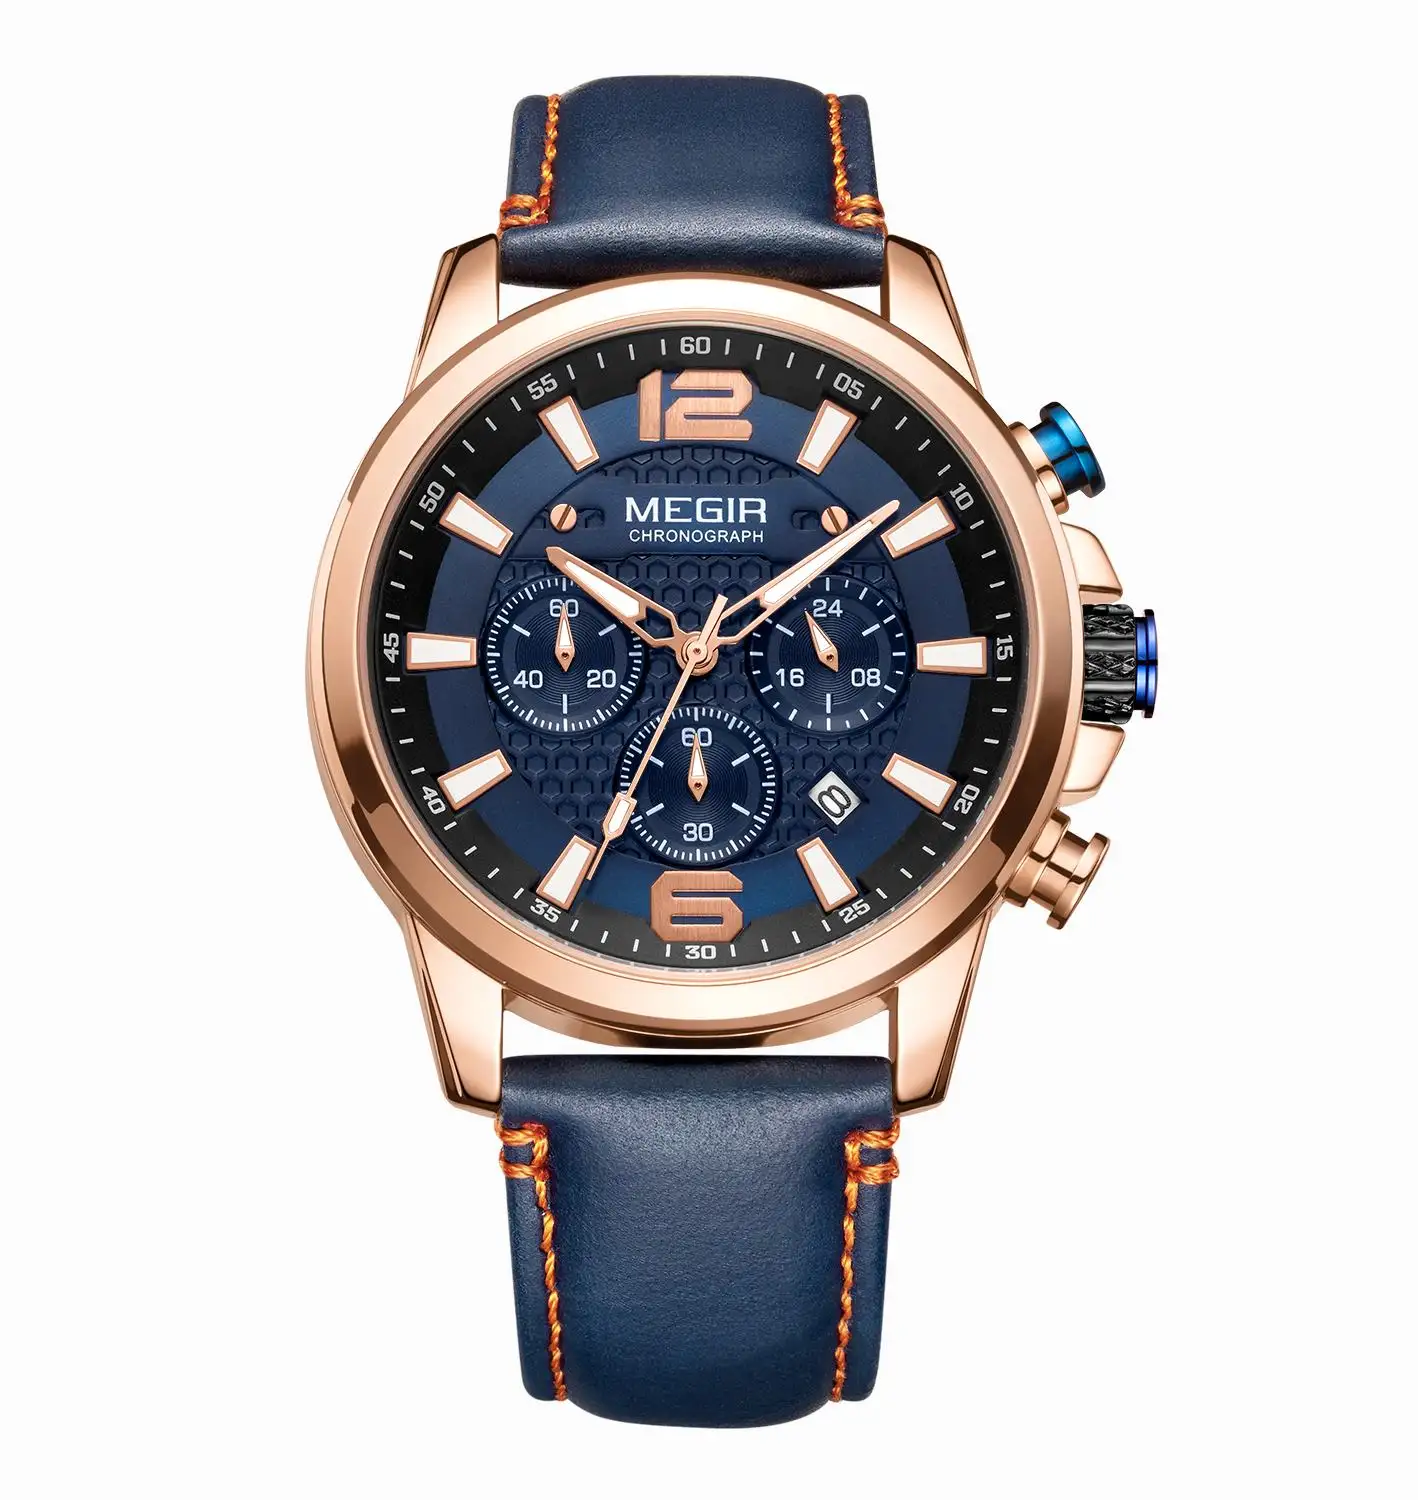 Top Brand Luxury MEGIR Watch Men Waterproof Chronograph Male Clock Full Steel Business Man Sport Wristwatch 2156